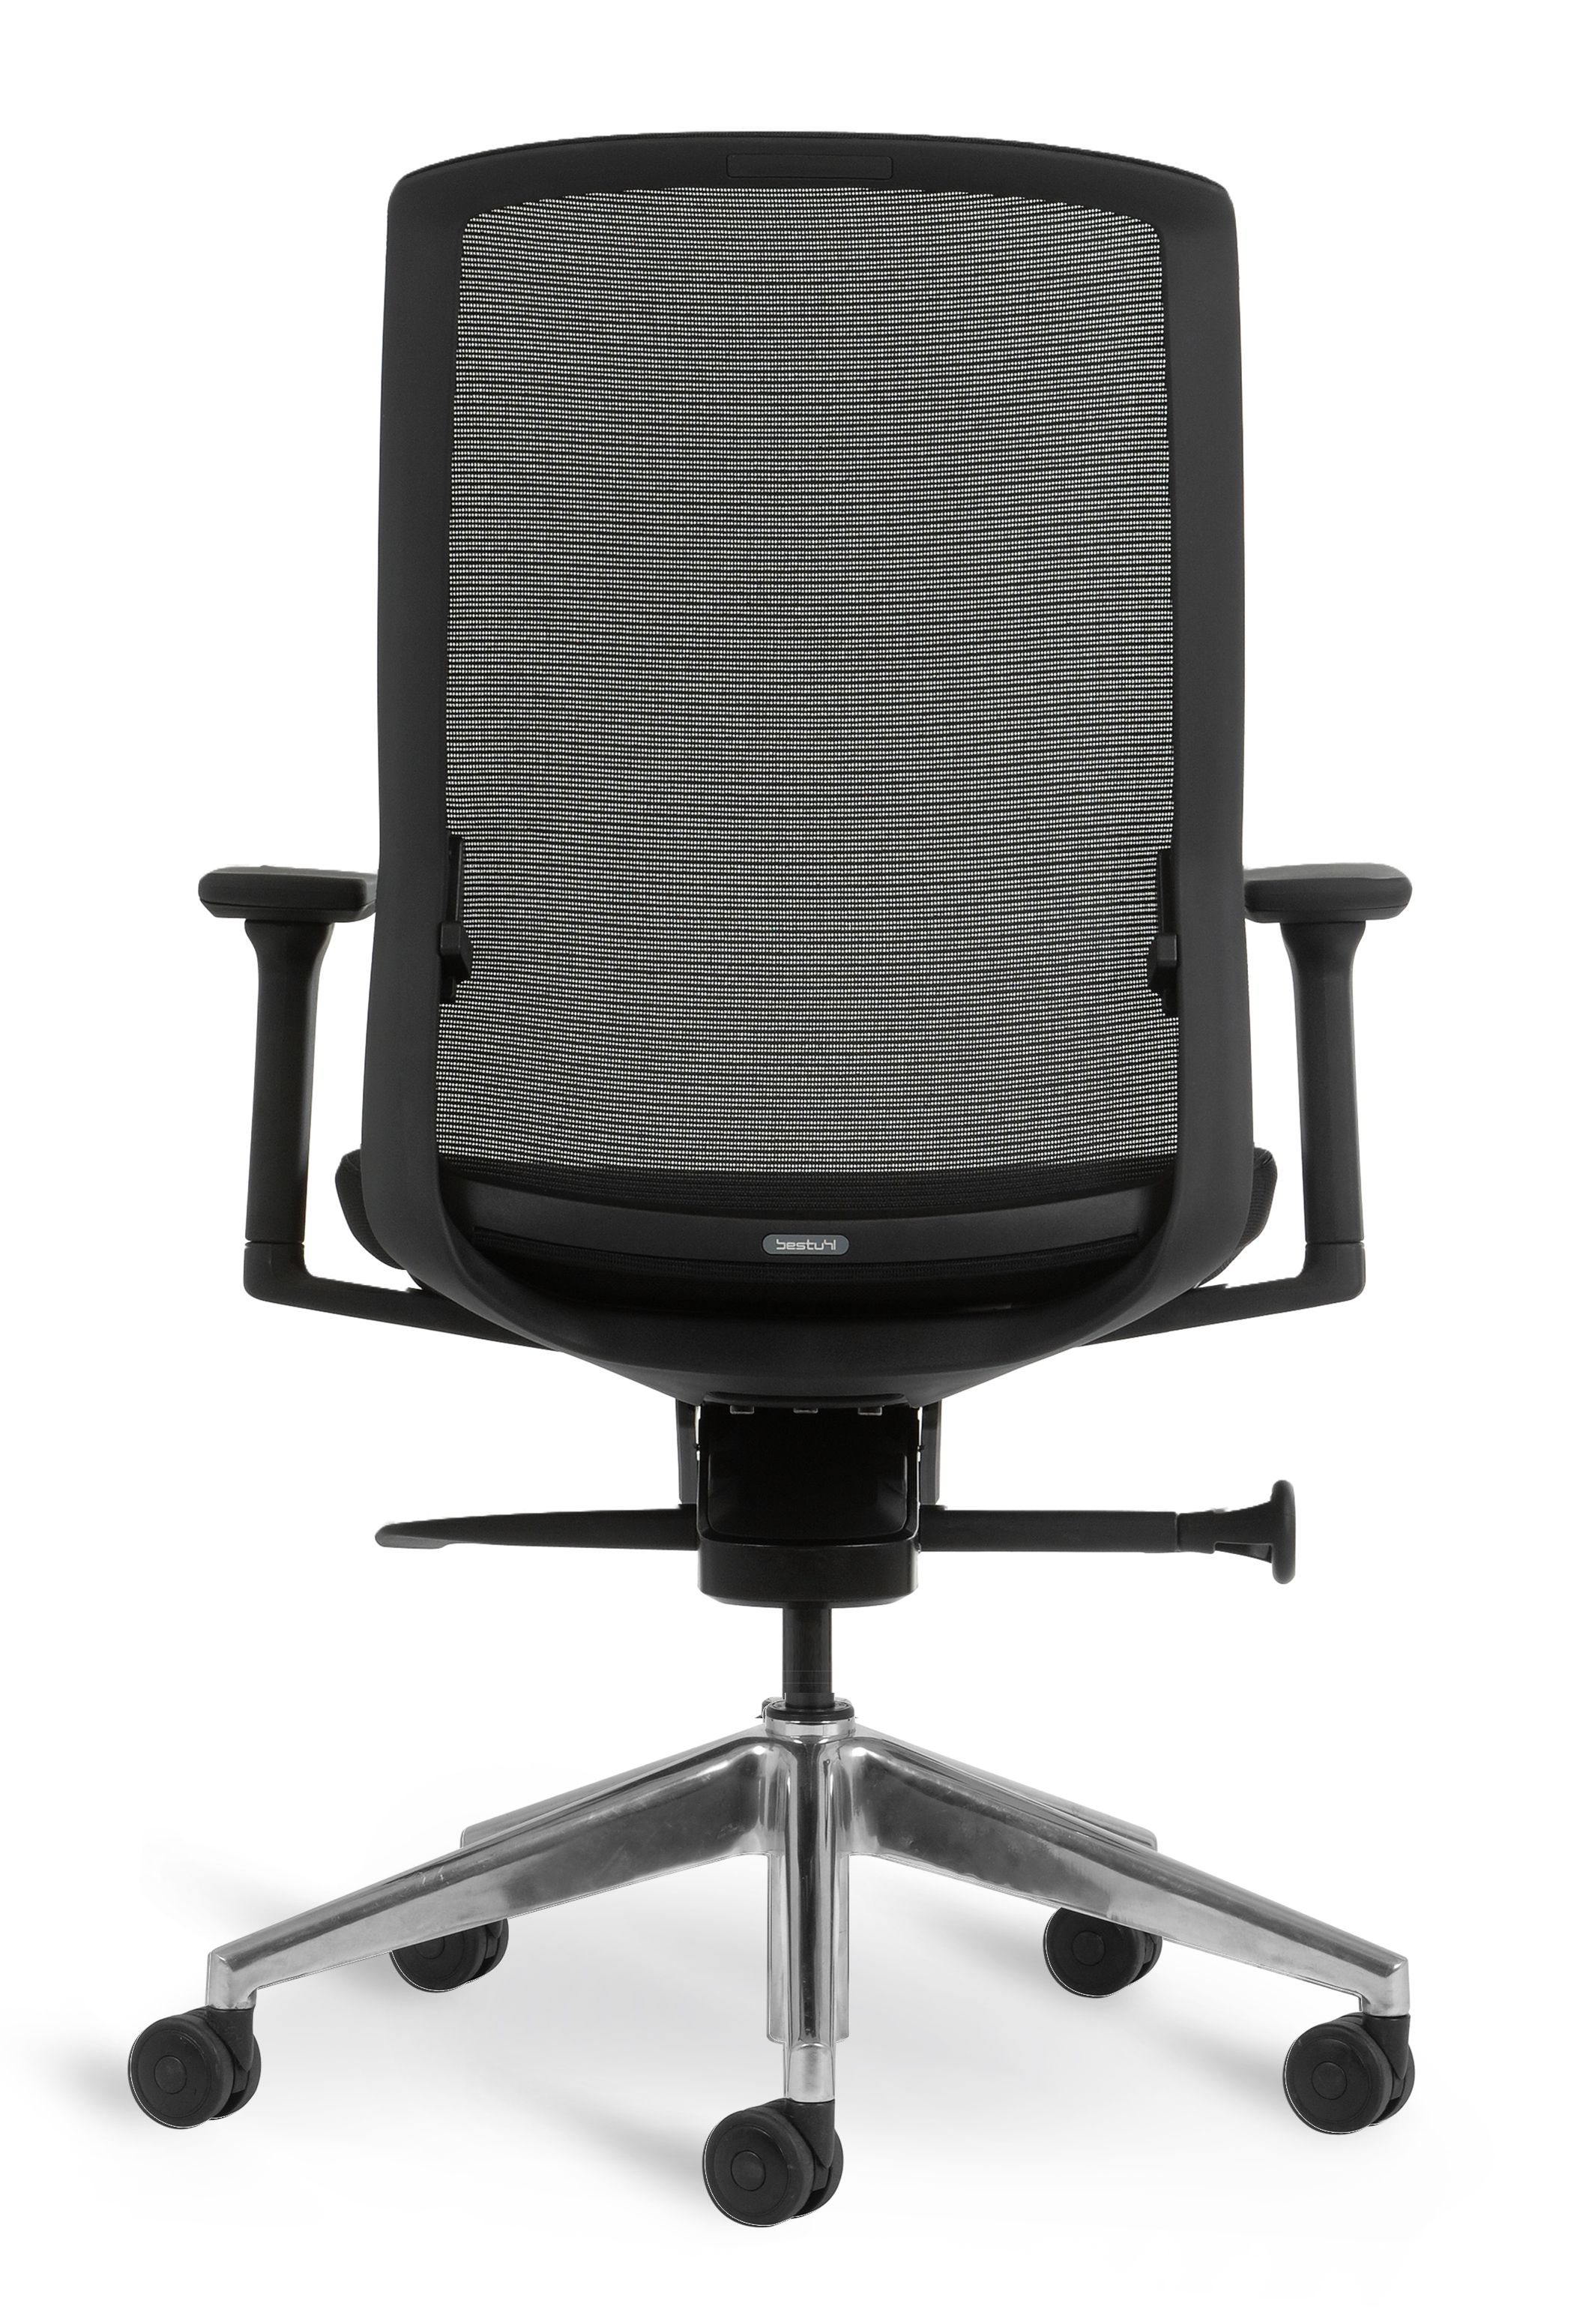 WS - J1 task chair - Black, polished base (Back)